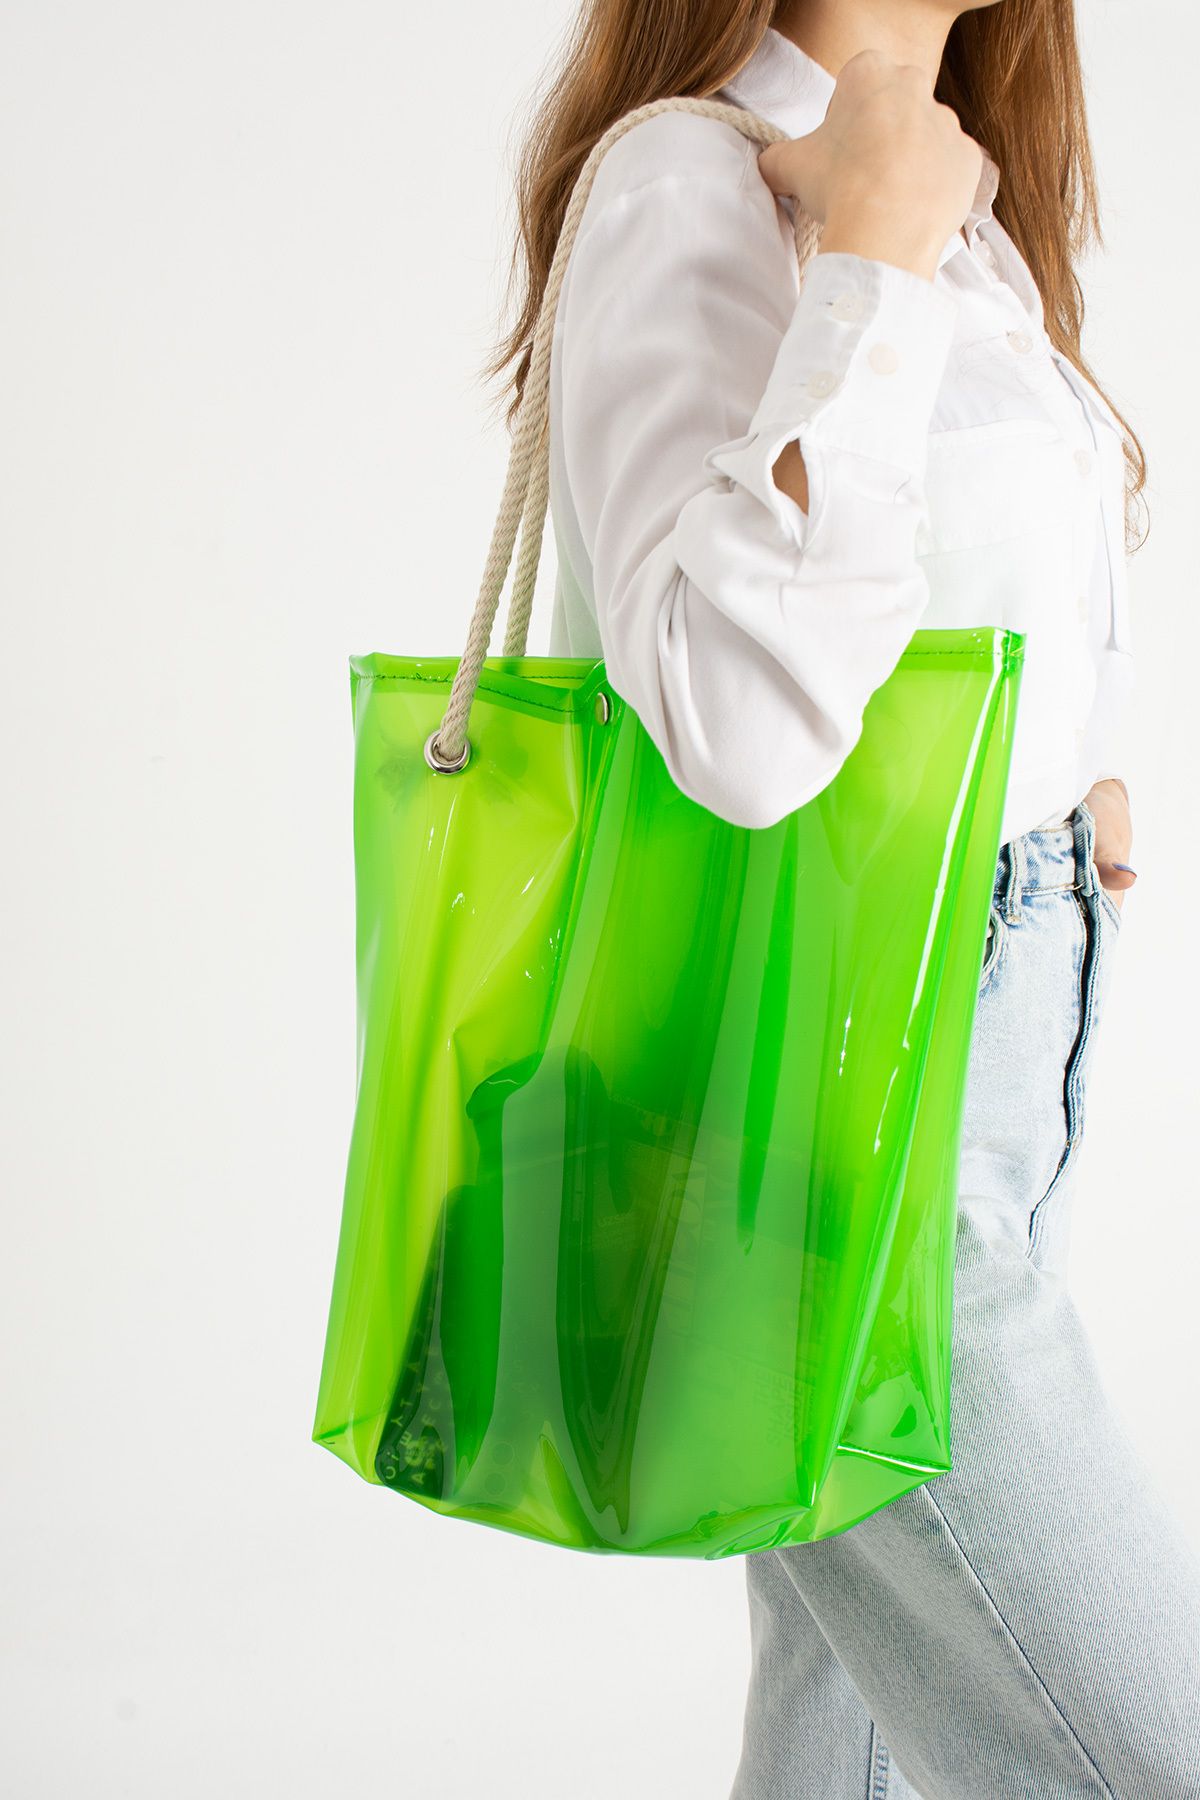 Moda Devrin Yeşil Kadın Beach Bag Tpu Şeffaf Plaj Çantası